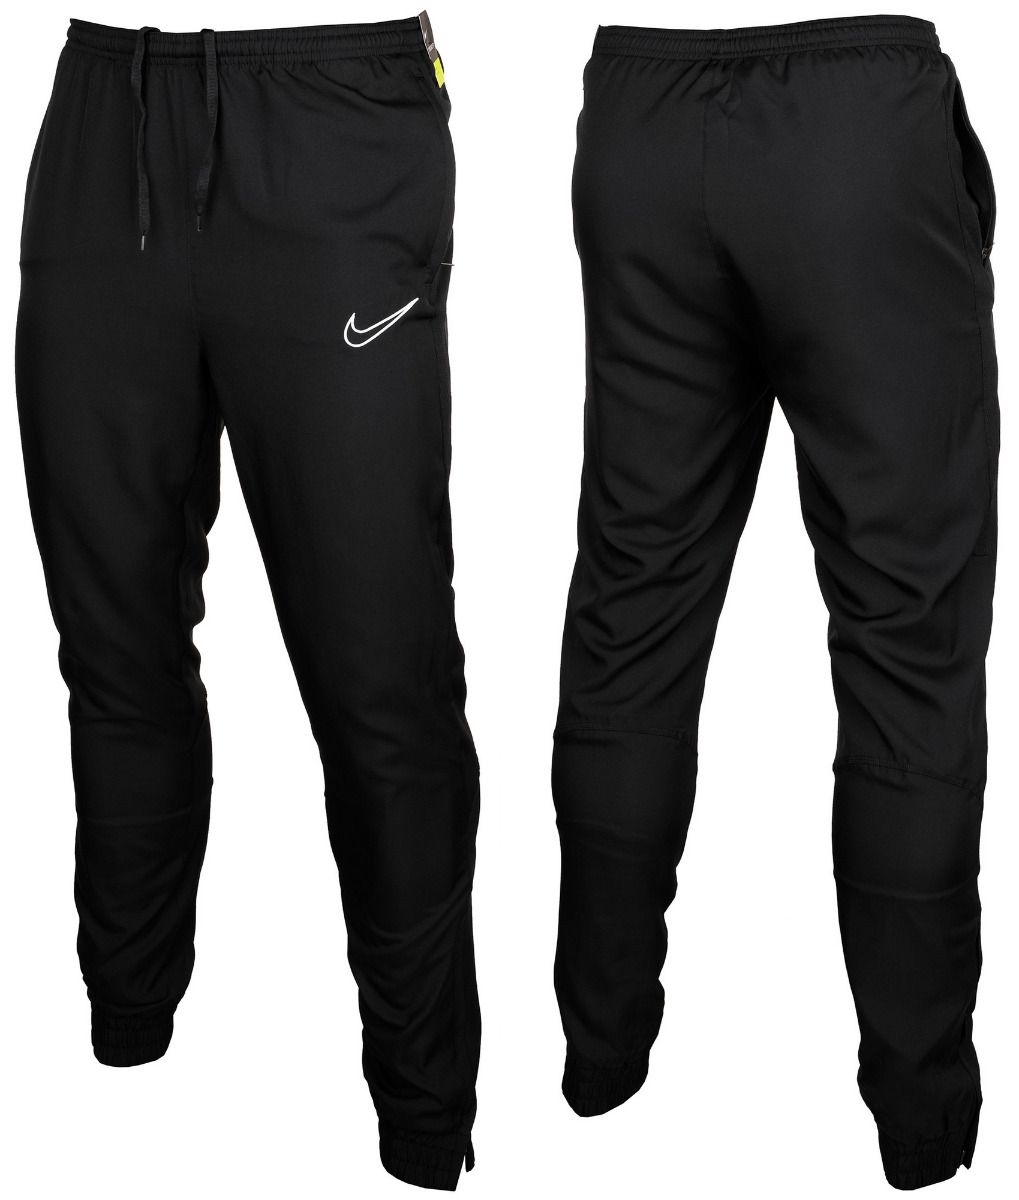 Nike Spodnie Męskie Dry Academy Pant WPZ AR7654 014